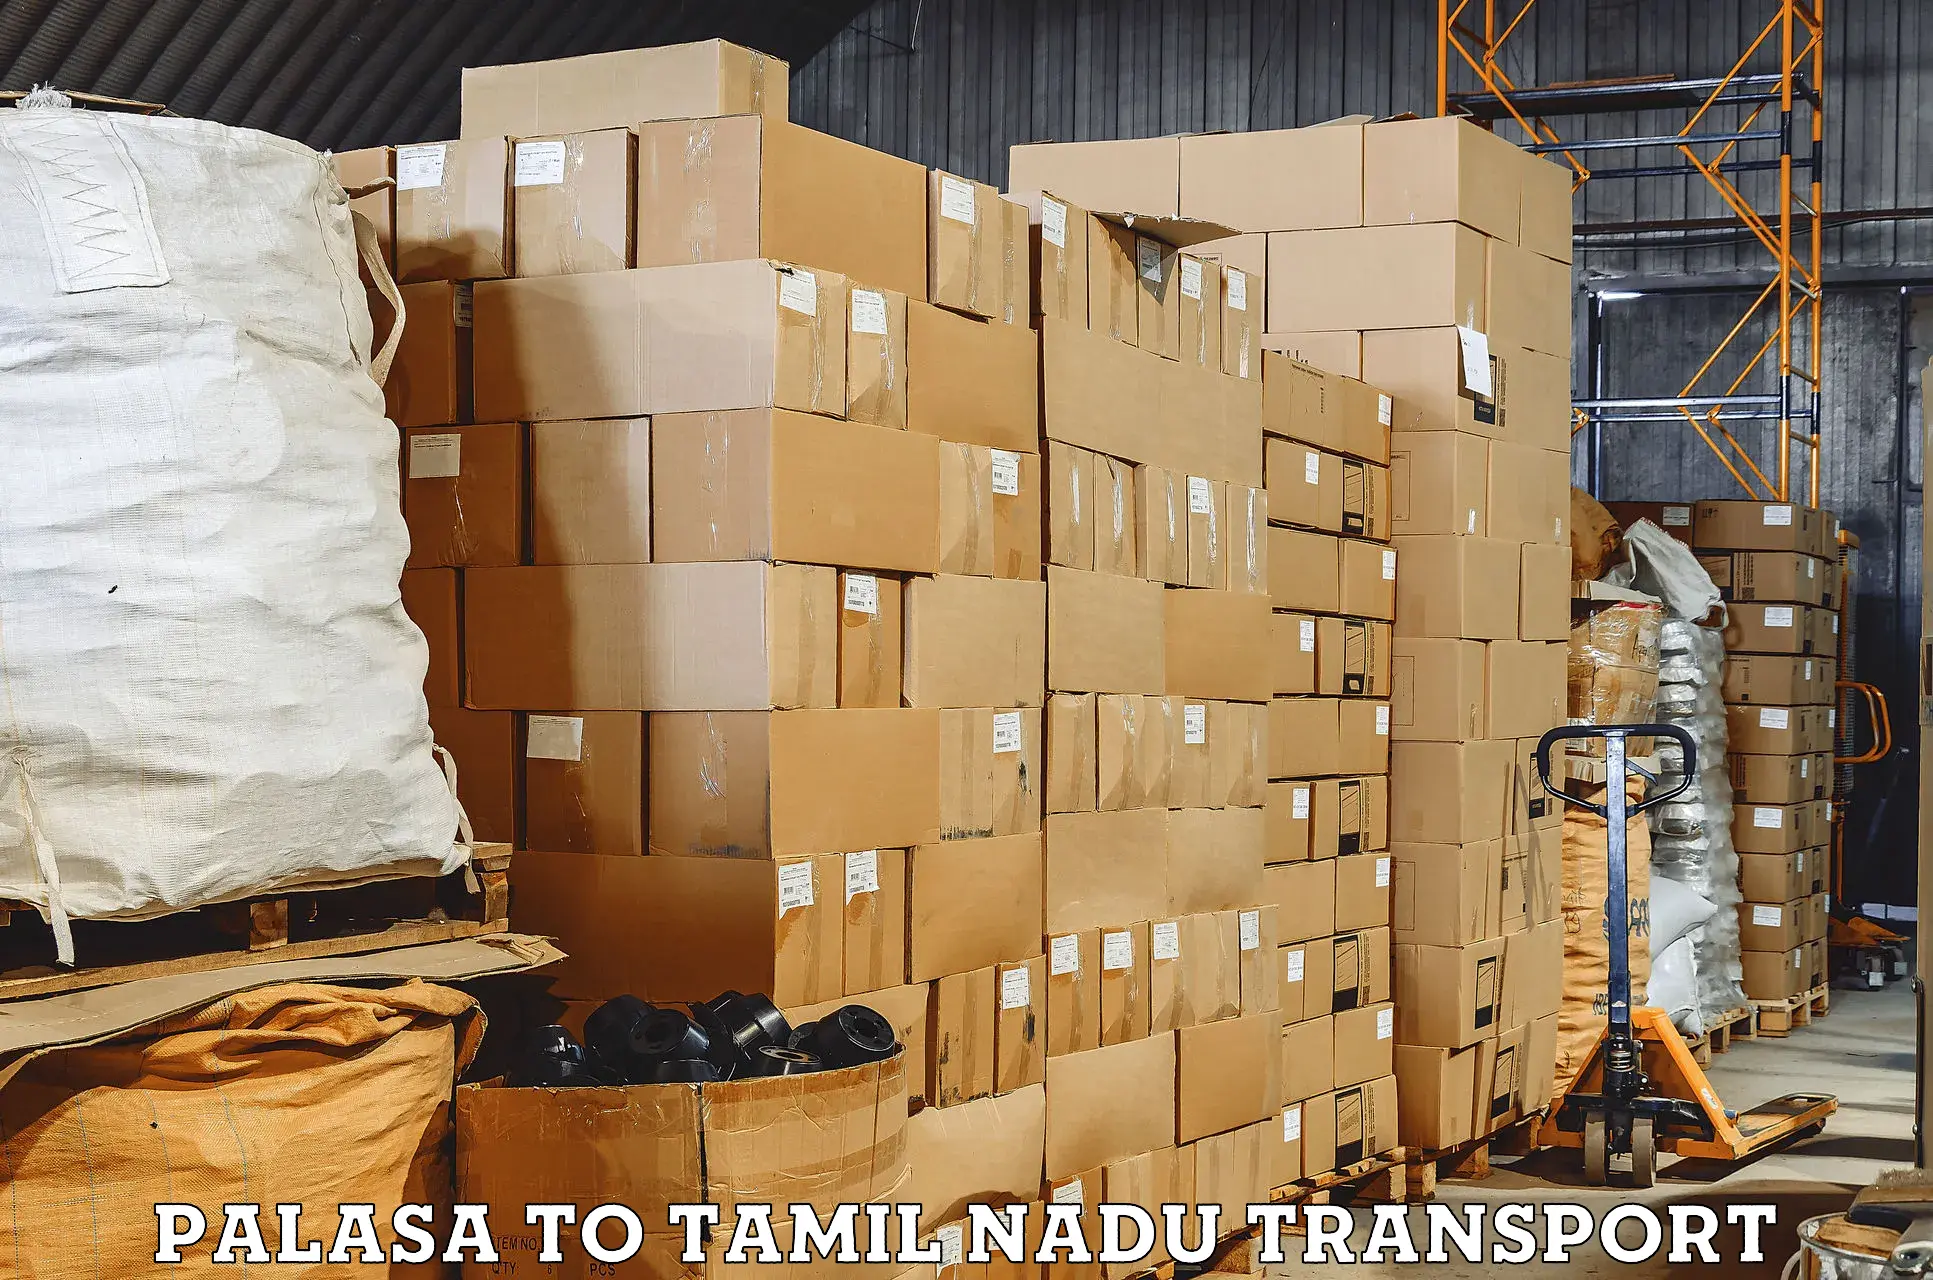 Pick up transport service in Palasa to Gobichettipalayam